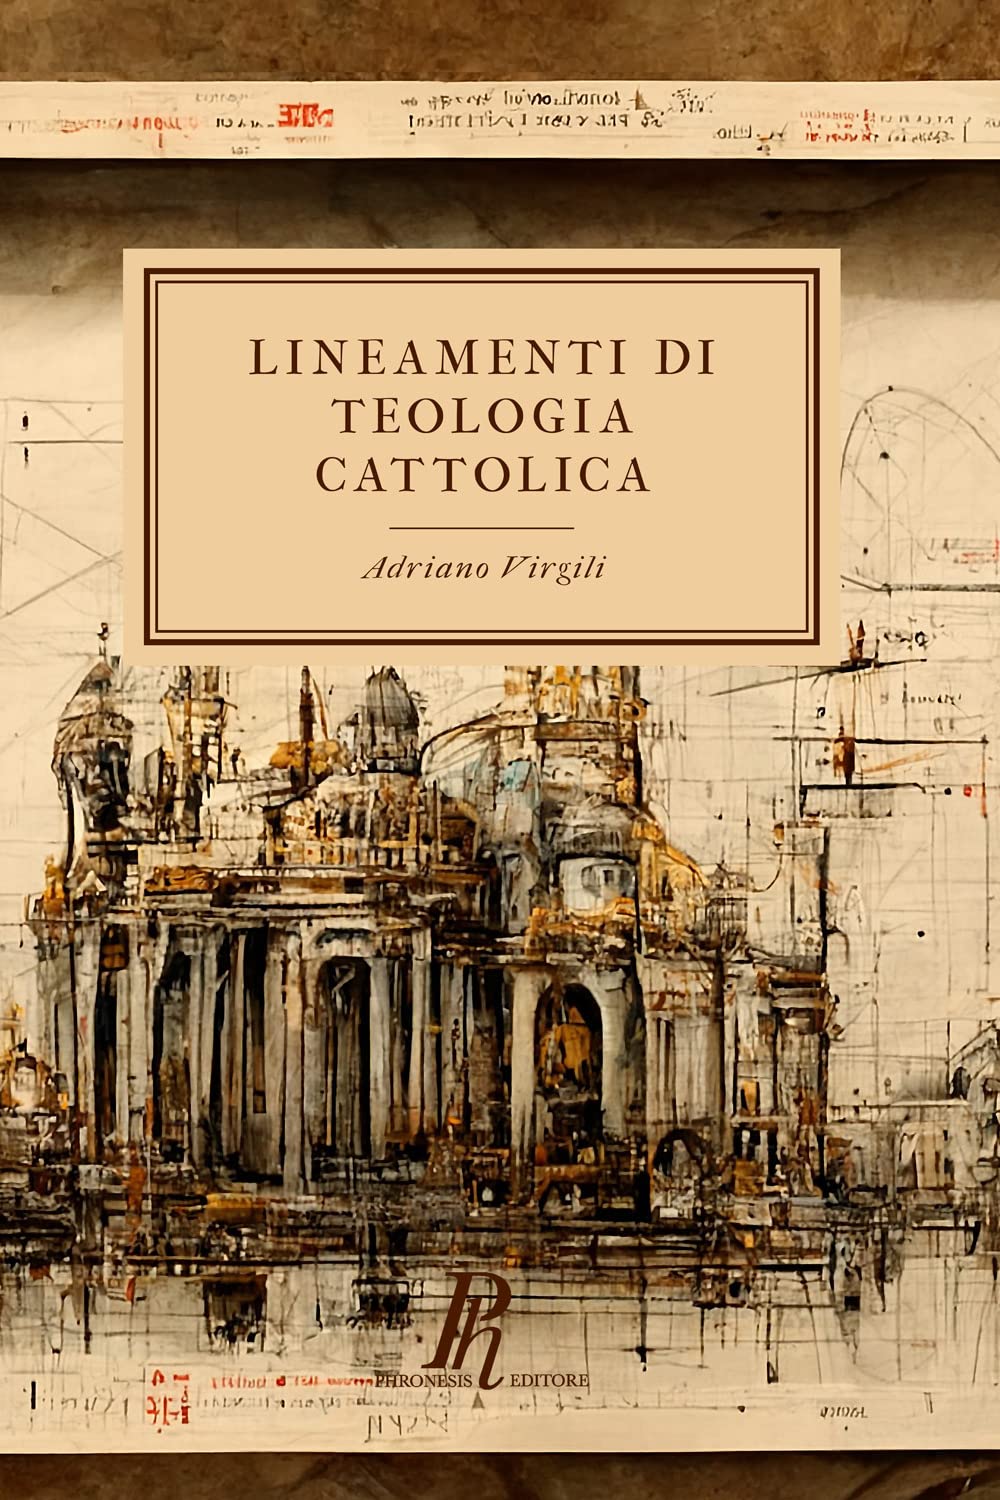 Copertina del libro "Lineamenti di teologia cattolica"